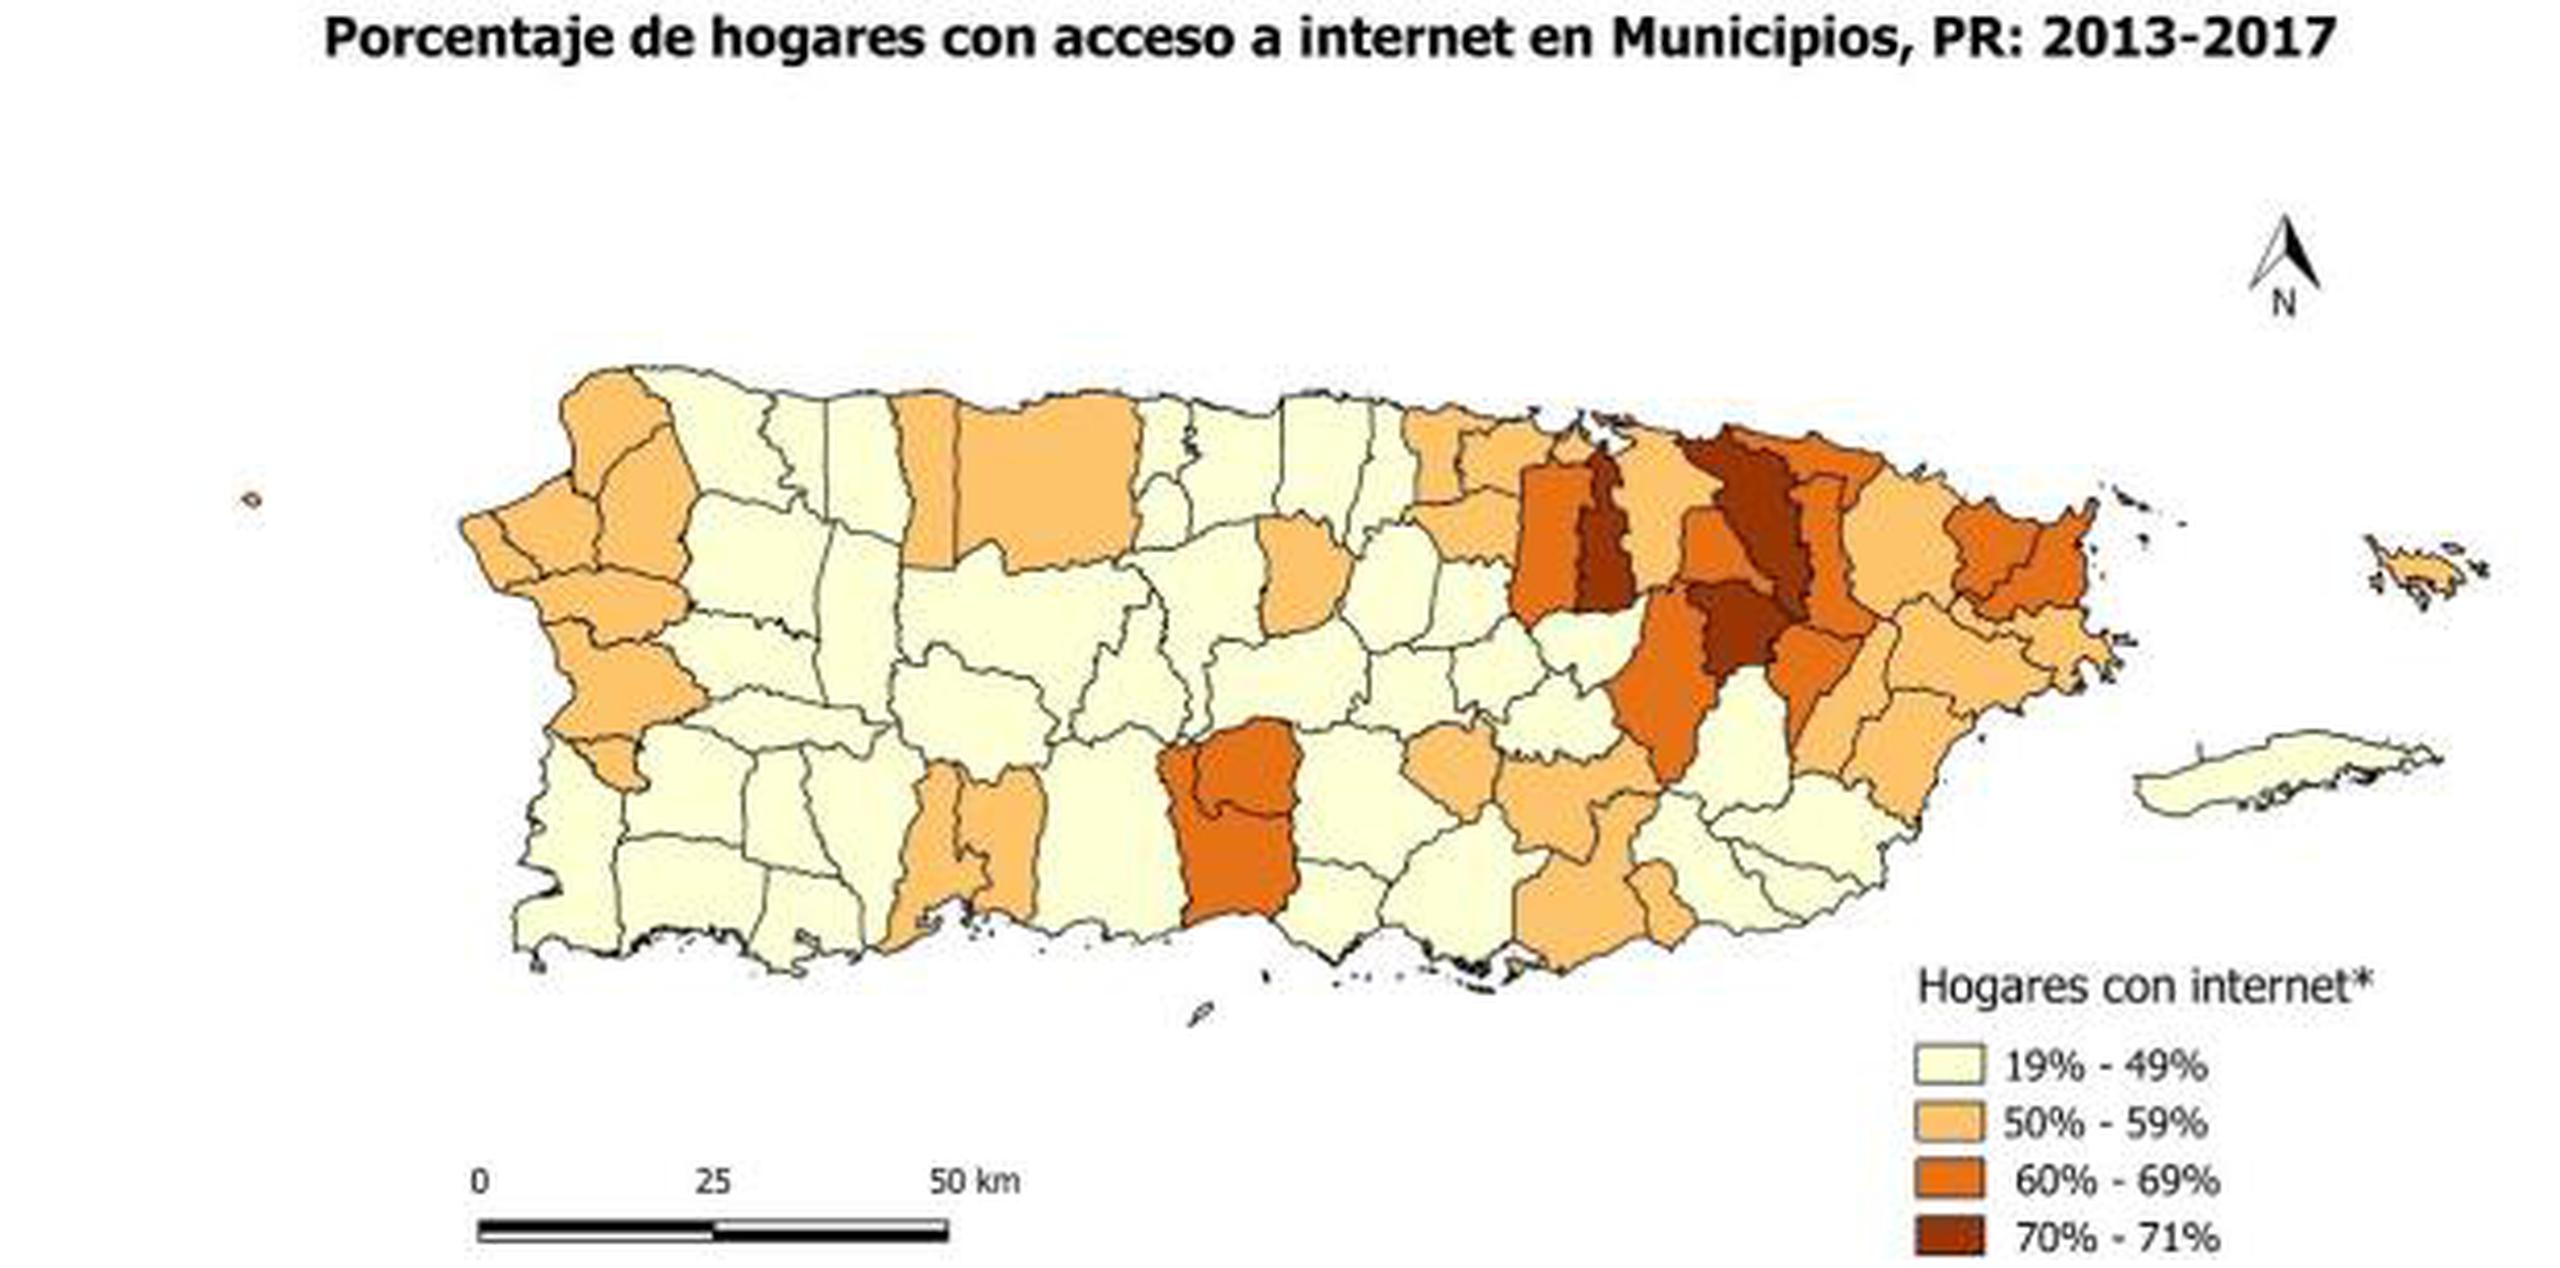 En cuanto a hogares con algún dispositivo de computadora u ordenador, el informe indica que alrededor del 62 por ciento de los hogares en Puerto Rico contaban con alguno de ellos. (Suministrada)